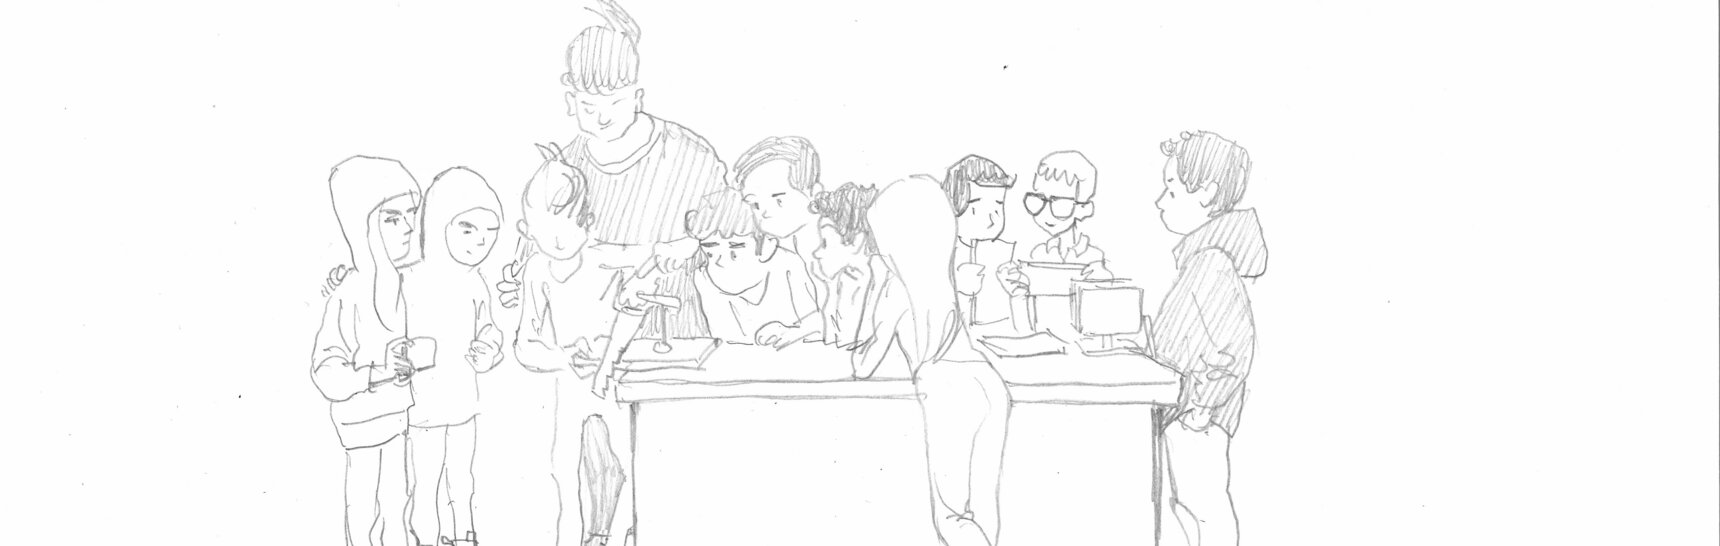 Schwarz-weiße Zeichnung, Schüler*innen umringen ihre Lehrerin beim Werkunterricht